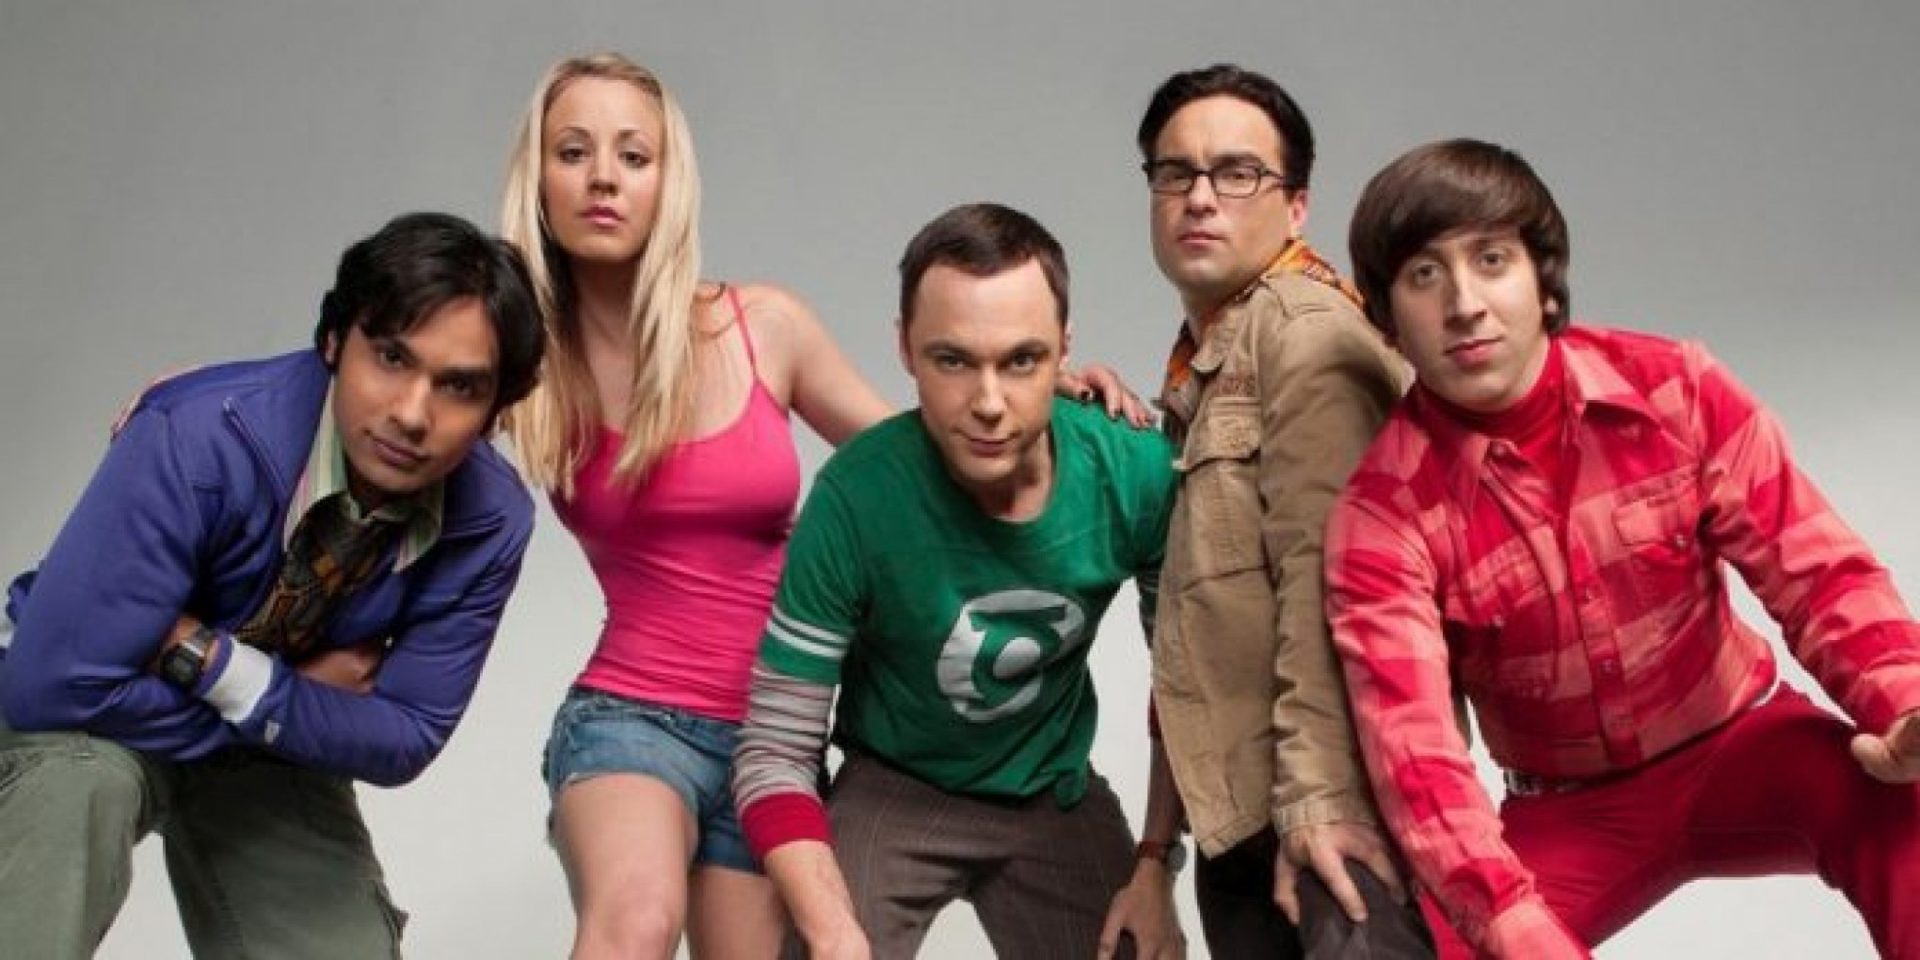 De assédio a loira burra: as piadas de Big Bang Theory que envelheceram mal